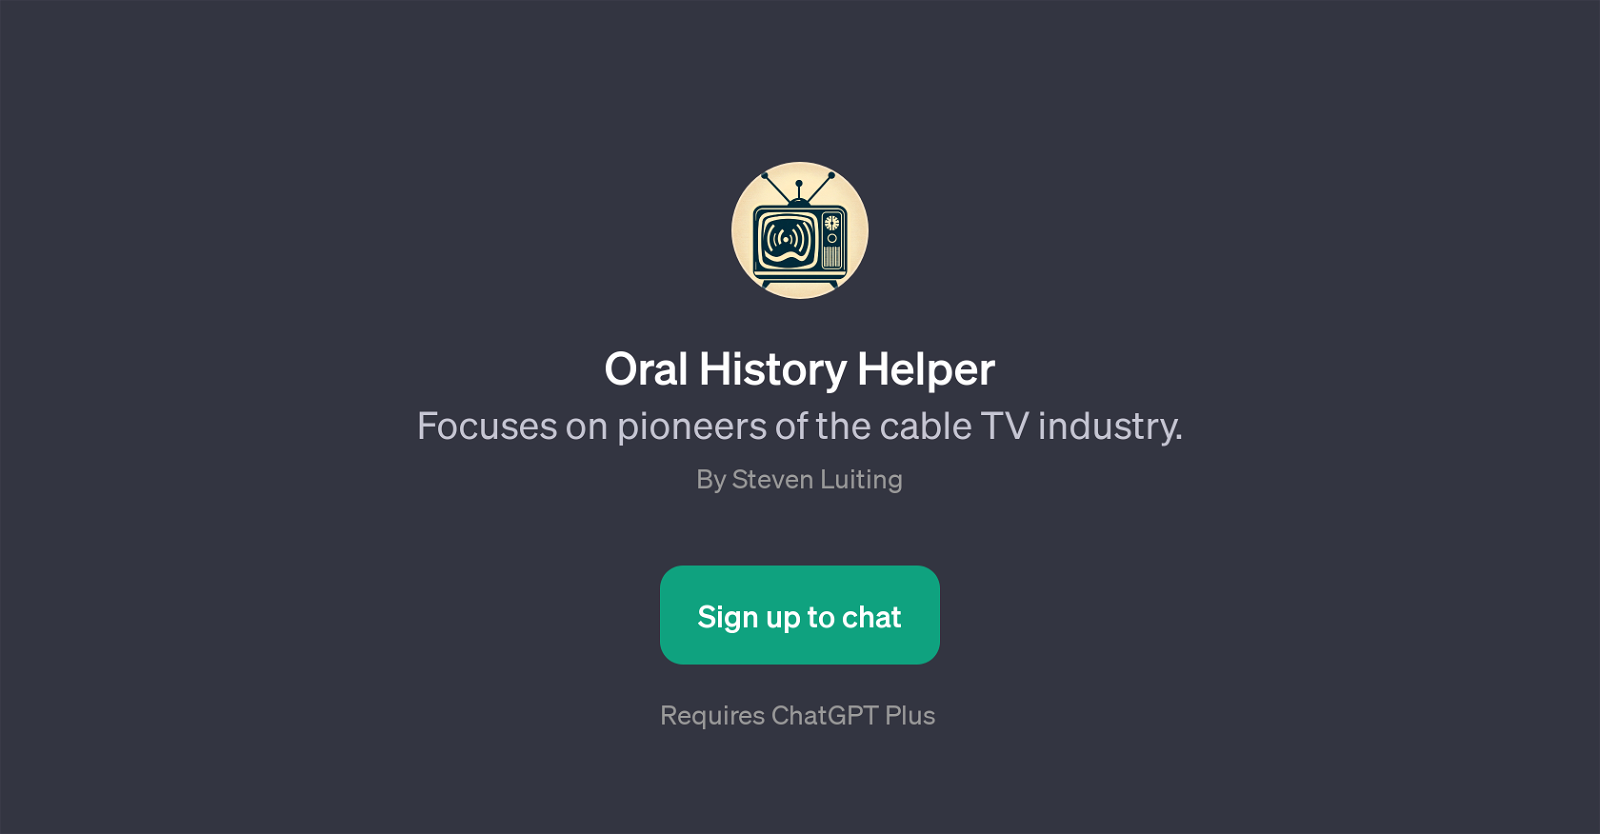 Oral History Helper website